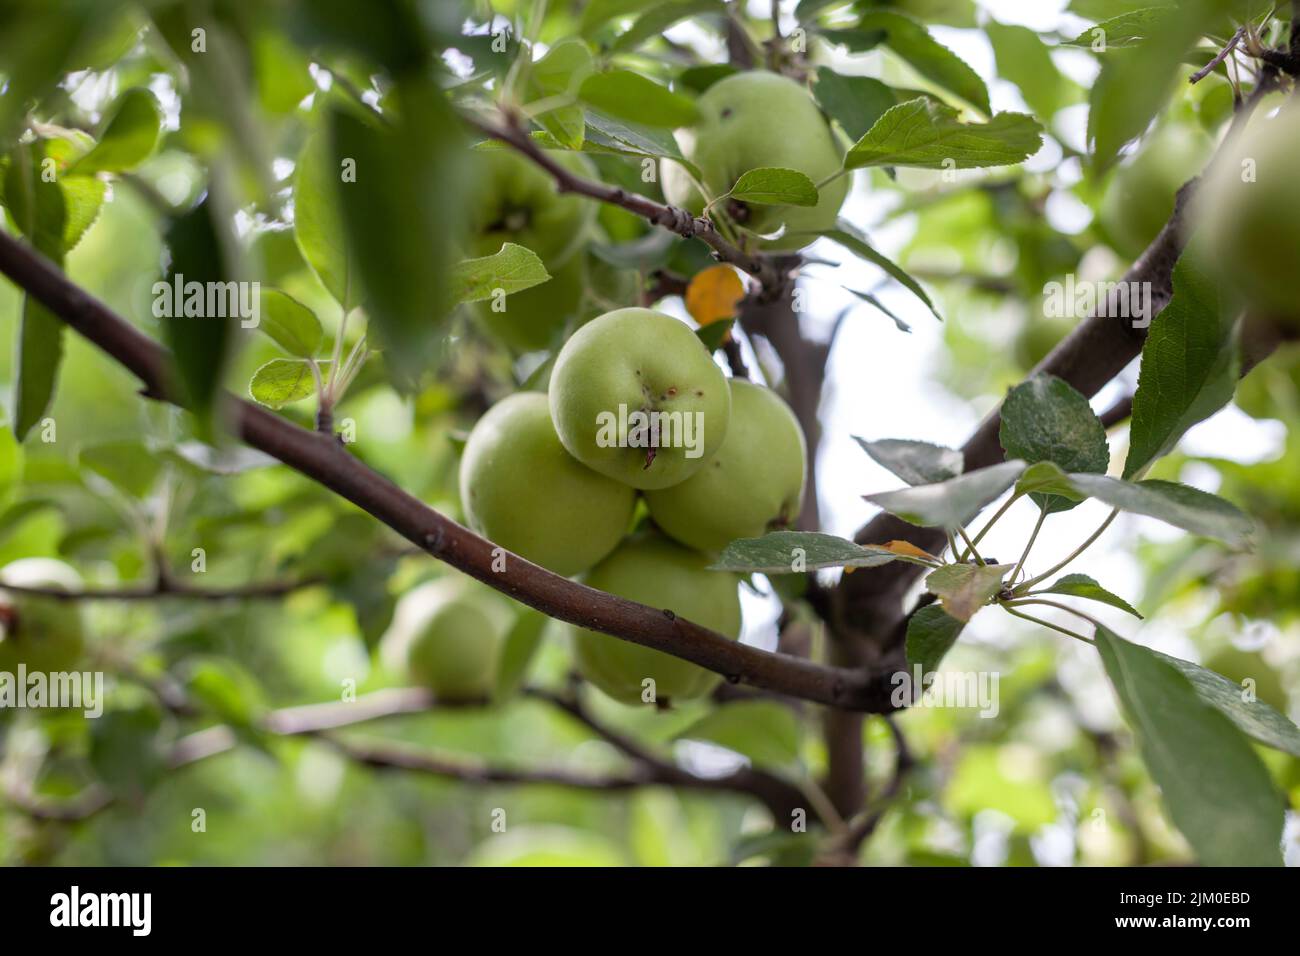 Les pommes vertes pèsent sur une branche d'arbre dans le jardin. Pommes non mûres. Pommes touchées par la maladie, sur la branche d'un pommier dans le jardin. Banque D'Images